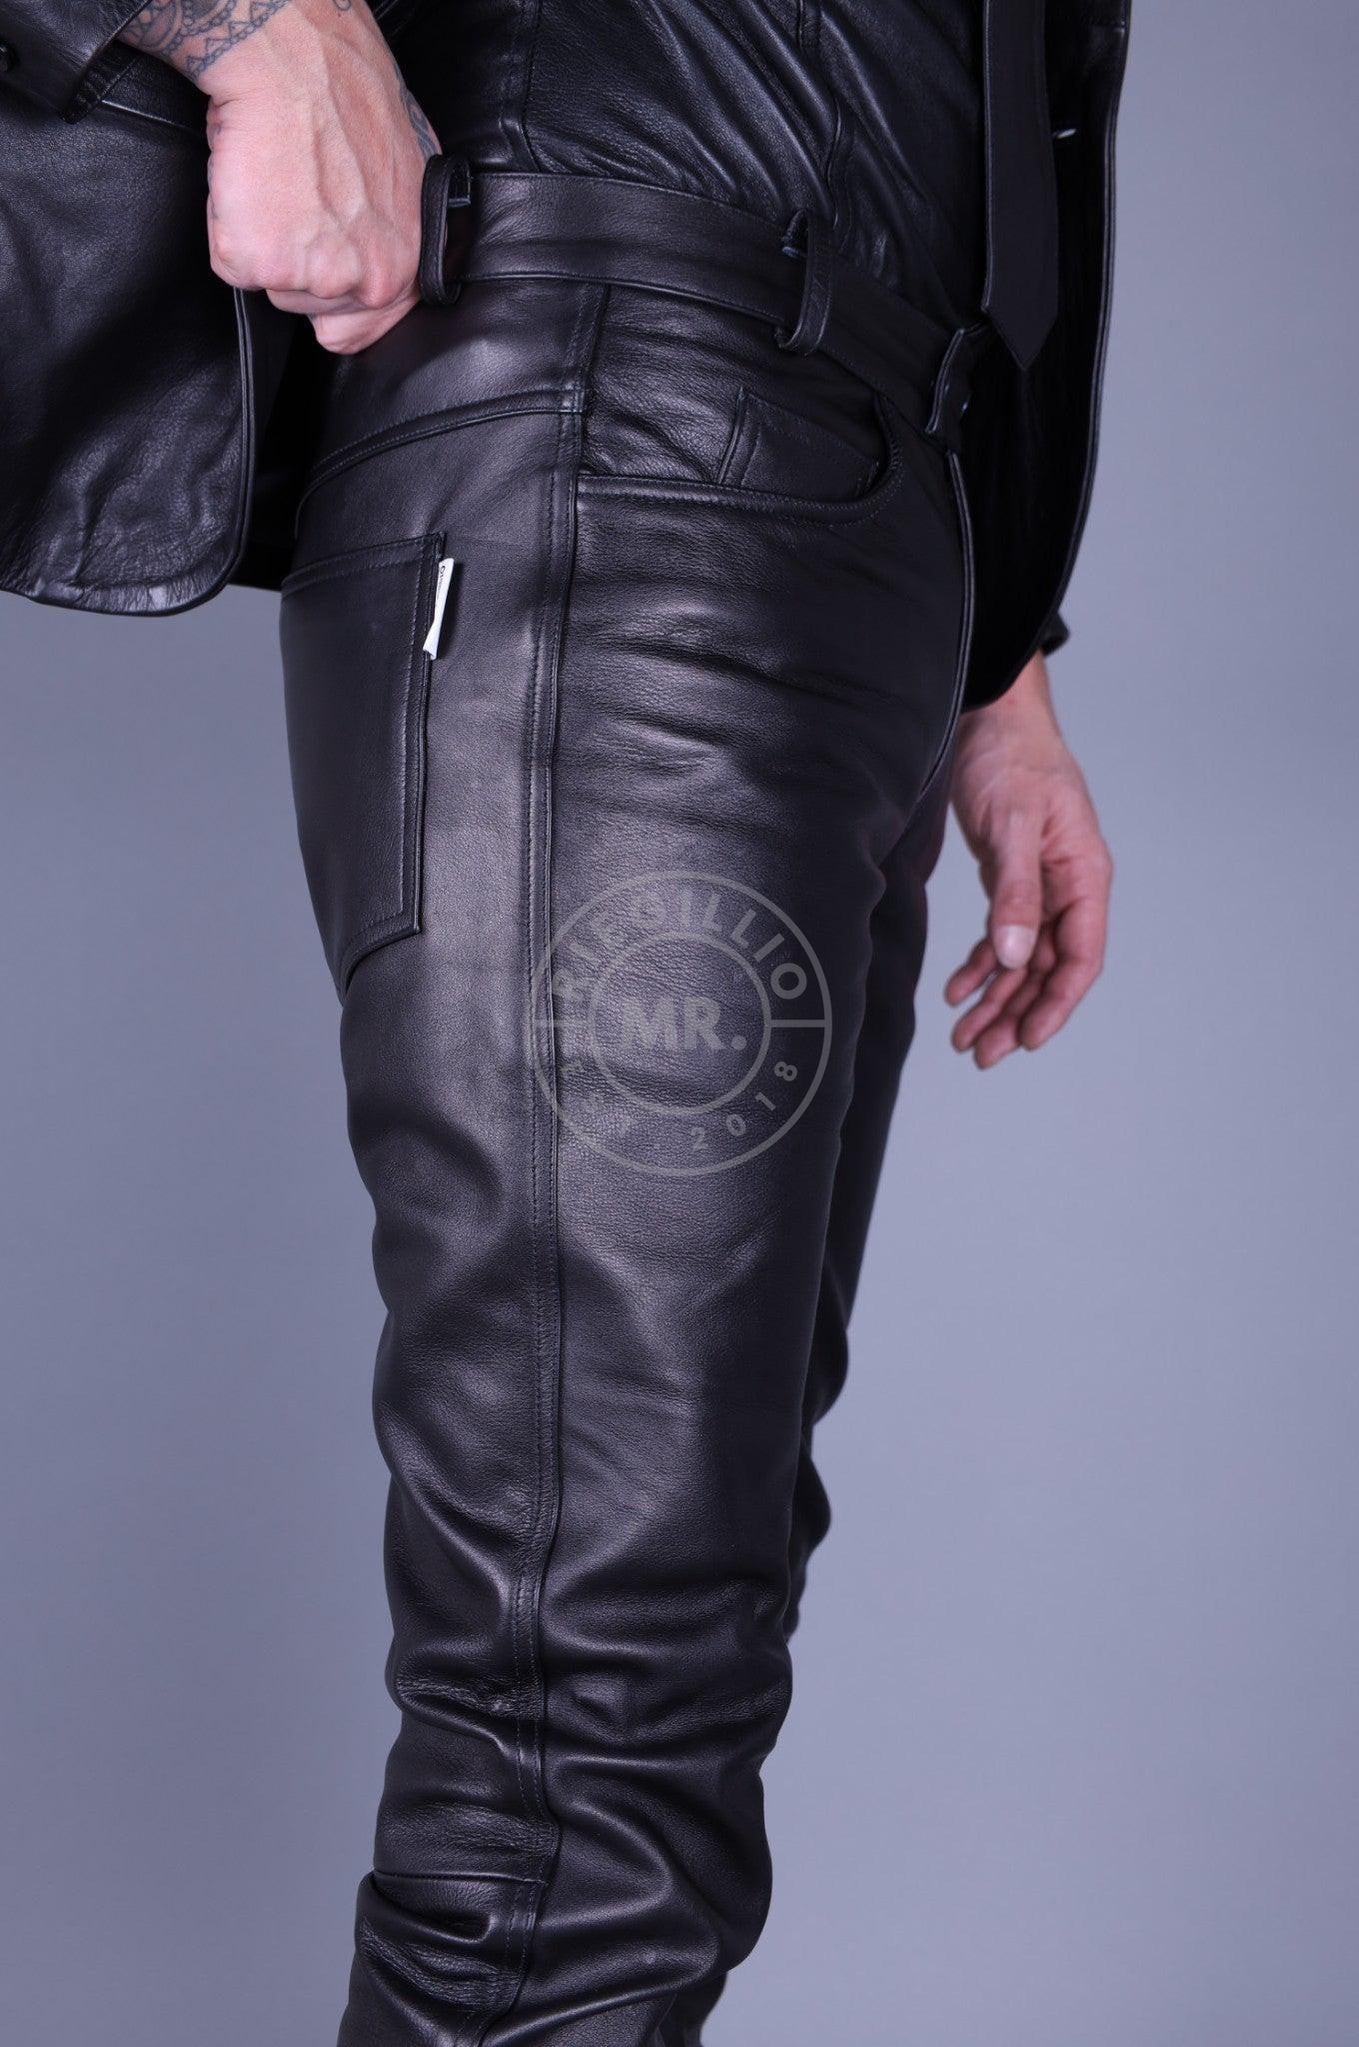 Black Leather 5 Pocket Pants at MR. Riegillio